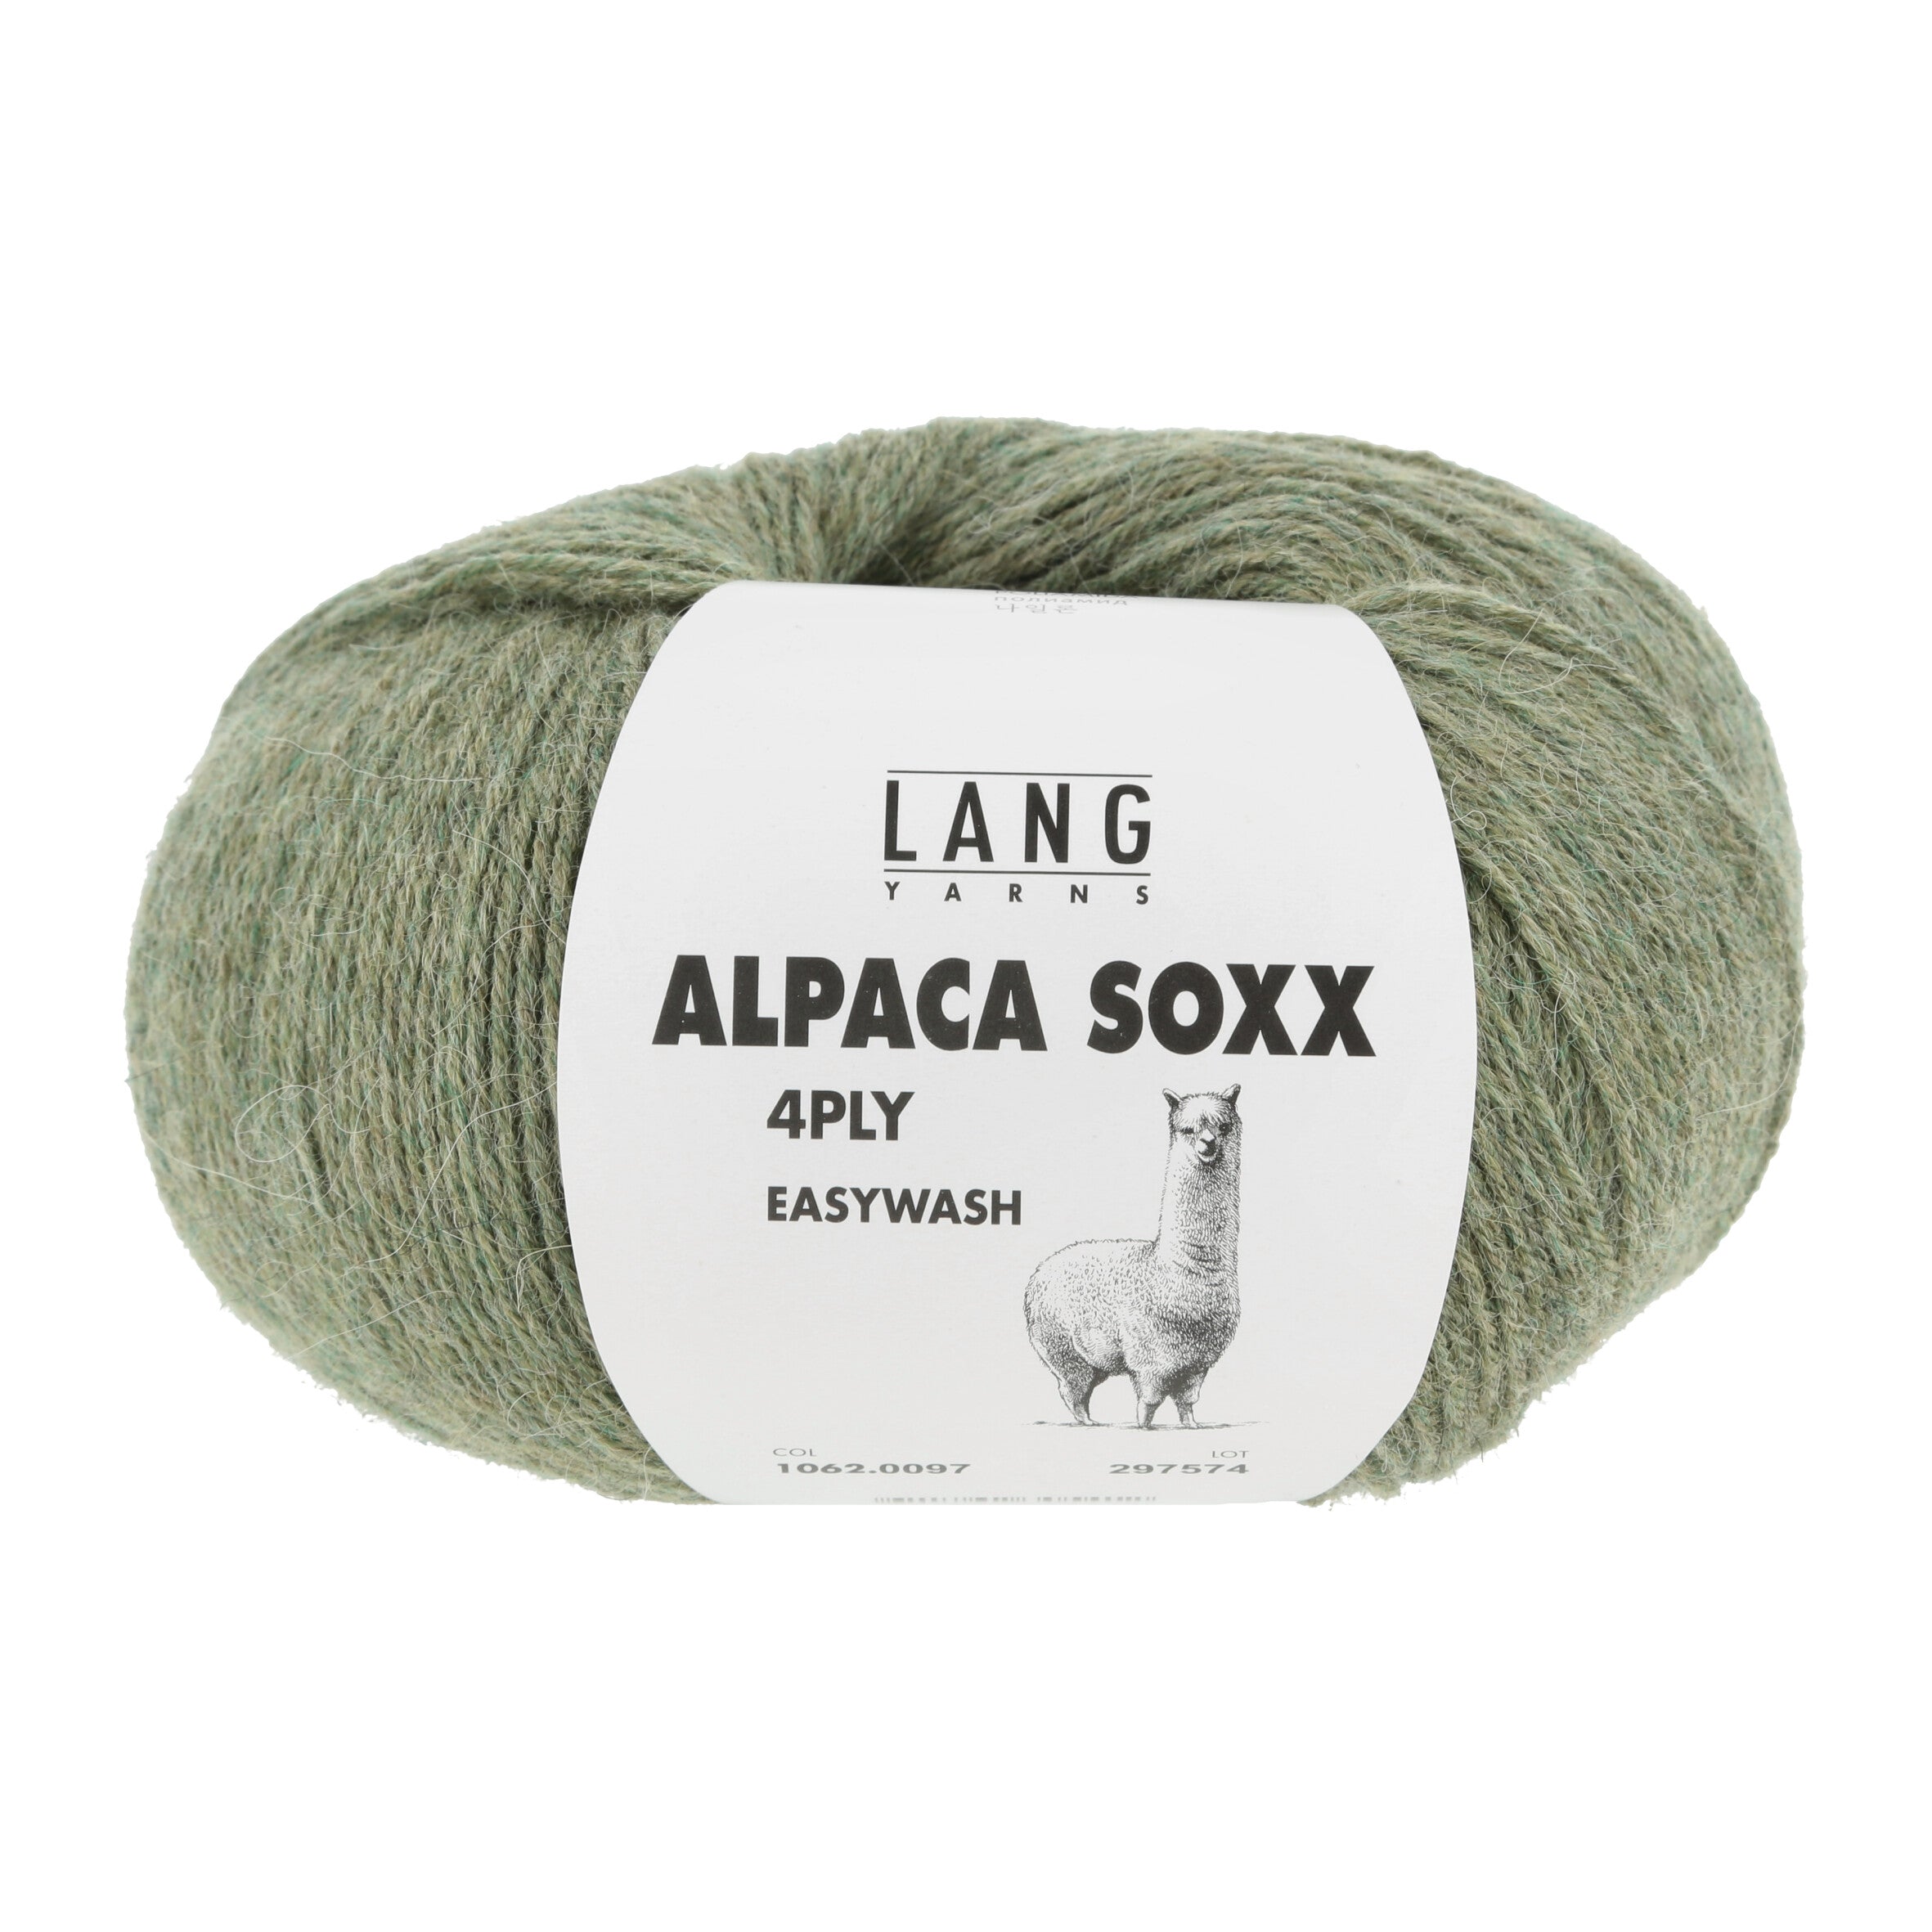 LANGYARNS Alpaca Soxx 4-PLY ** Neue Farben 22/23 **